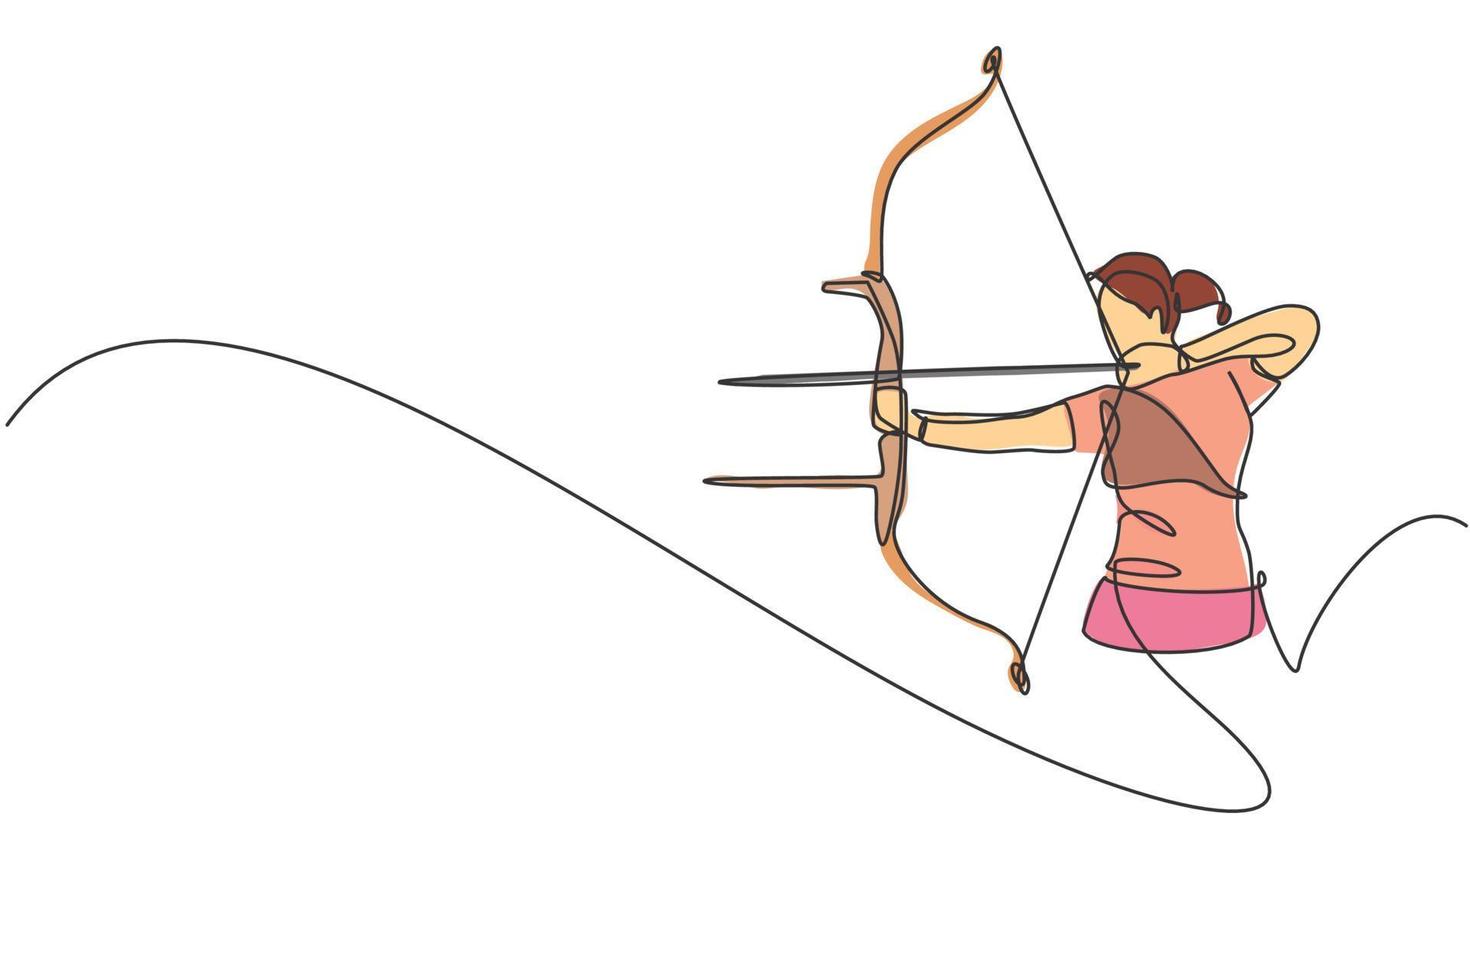 un dibujo de una sola línea de una joven arquera centrada en el ejercicio de tiro con arco para alcanzar la ilustración vectorial gráfica objetivo. tiro de actualización saludable con el concepto de deporte de arco. diseño moderno de dibujo de línea continua vector